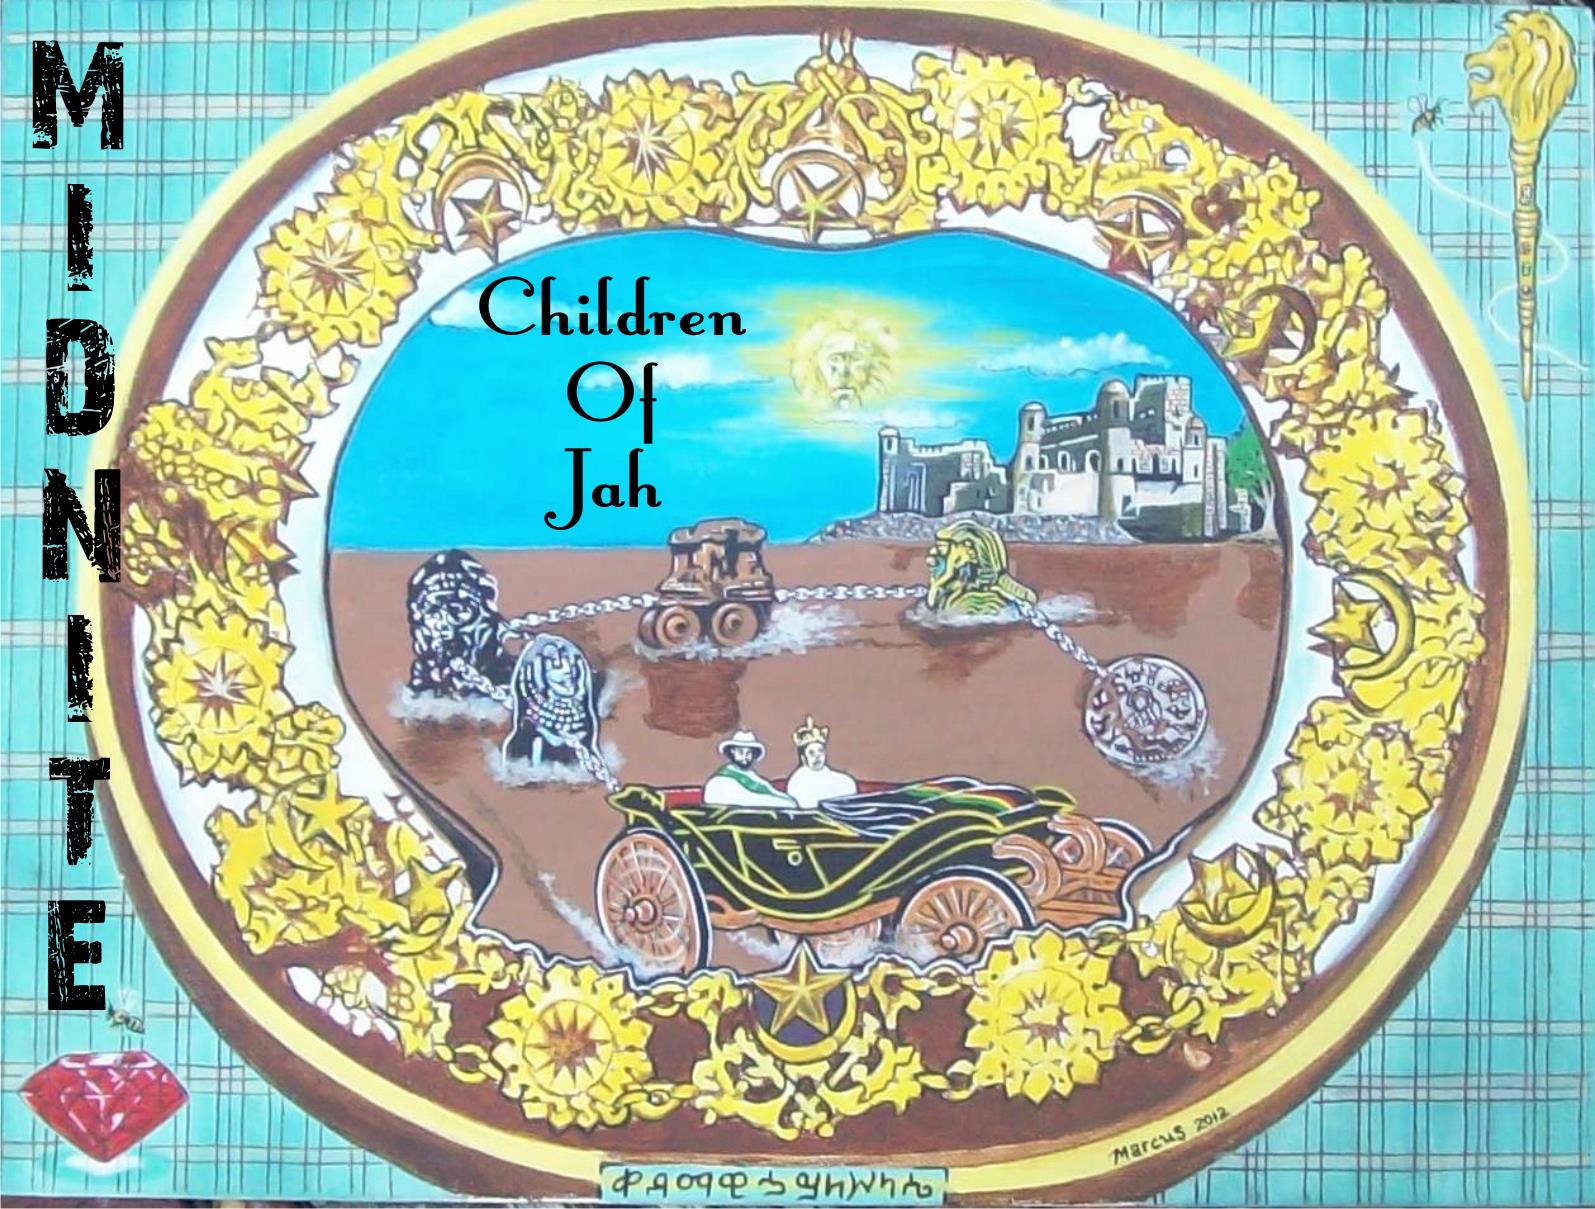 Midnite - Children of Jah (2012)